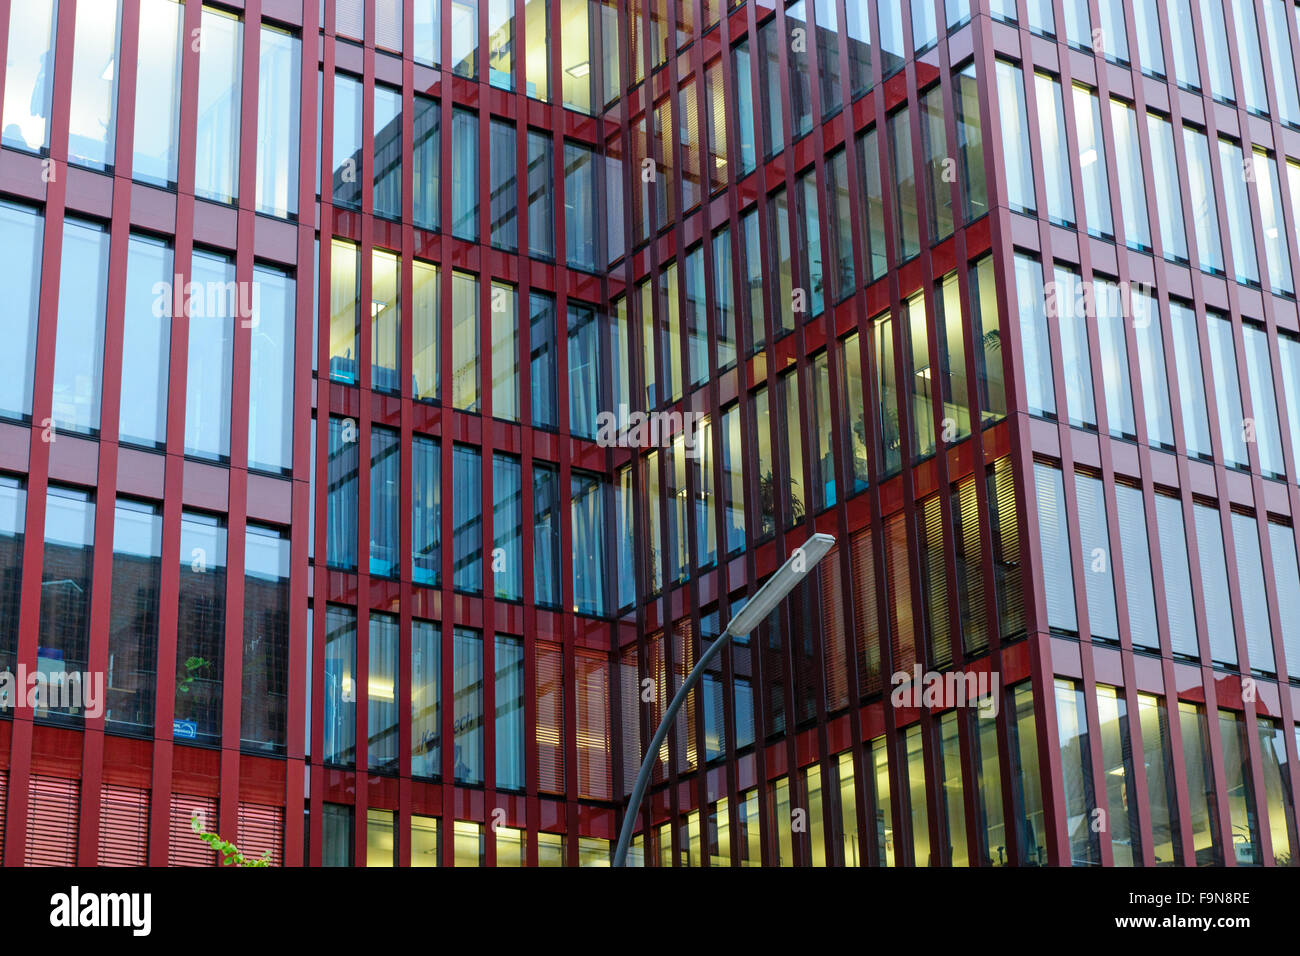 Detalle de un edificio offfice rojo con reflejos en las ventanas Foto de stock